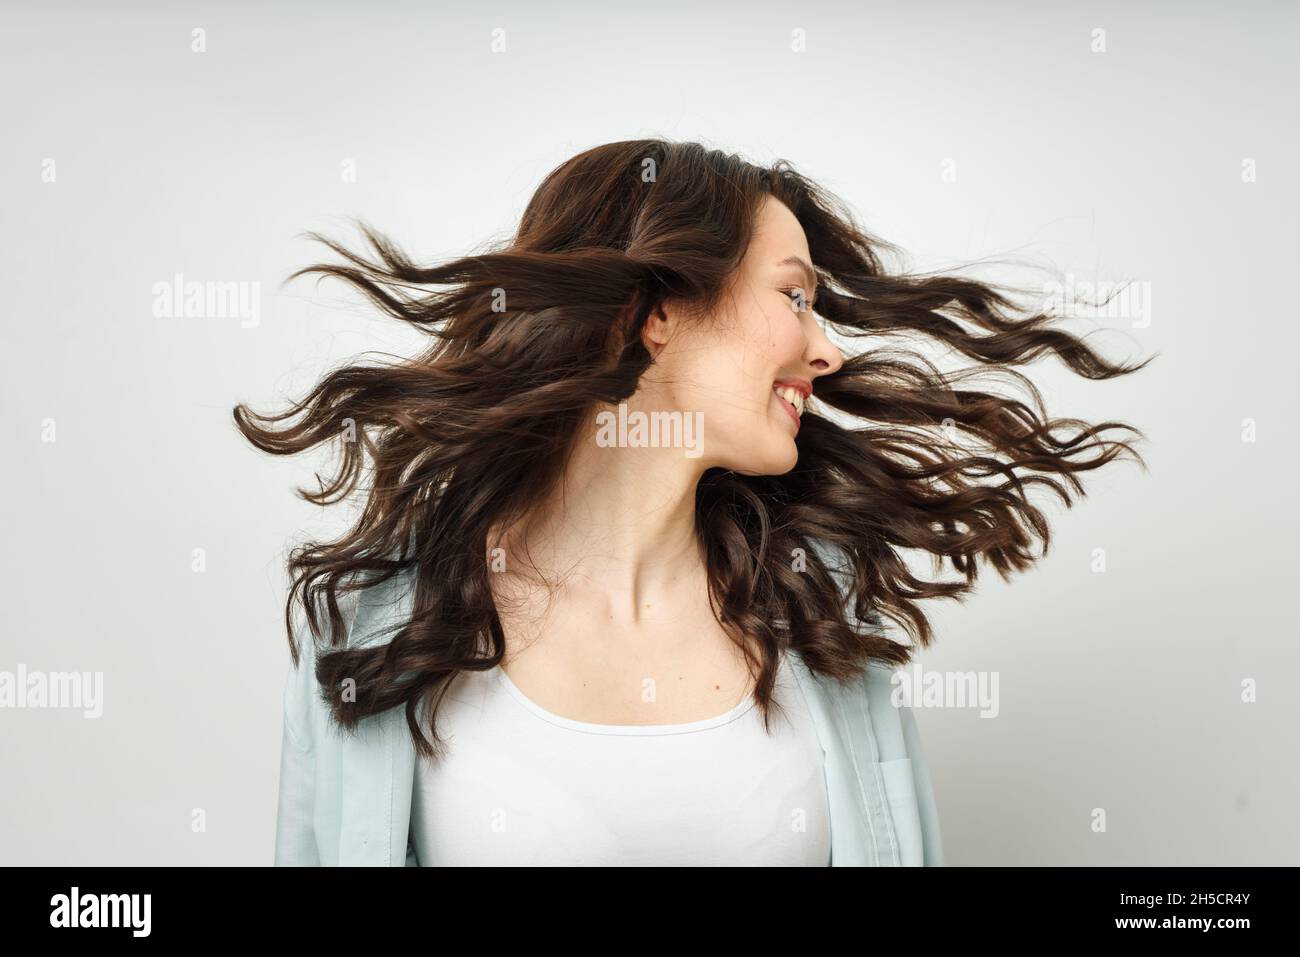 Ritratto di una bella bruna allegra con capelli ricci scorrevoli, sorridente, ridente, su sfondo bianco. Foto Stock